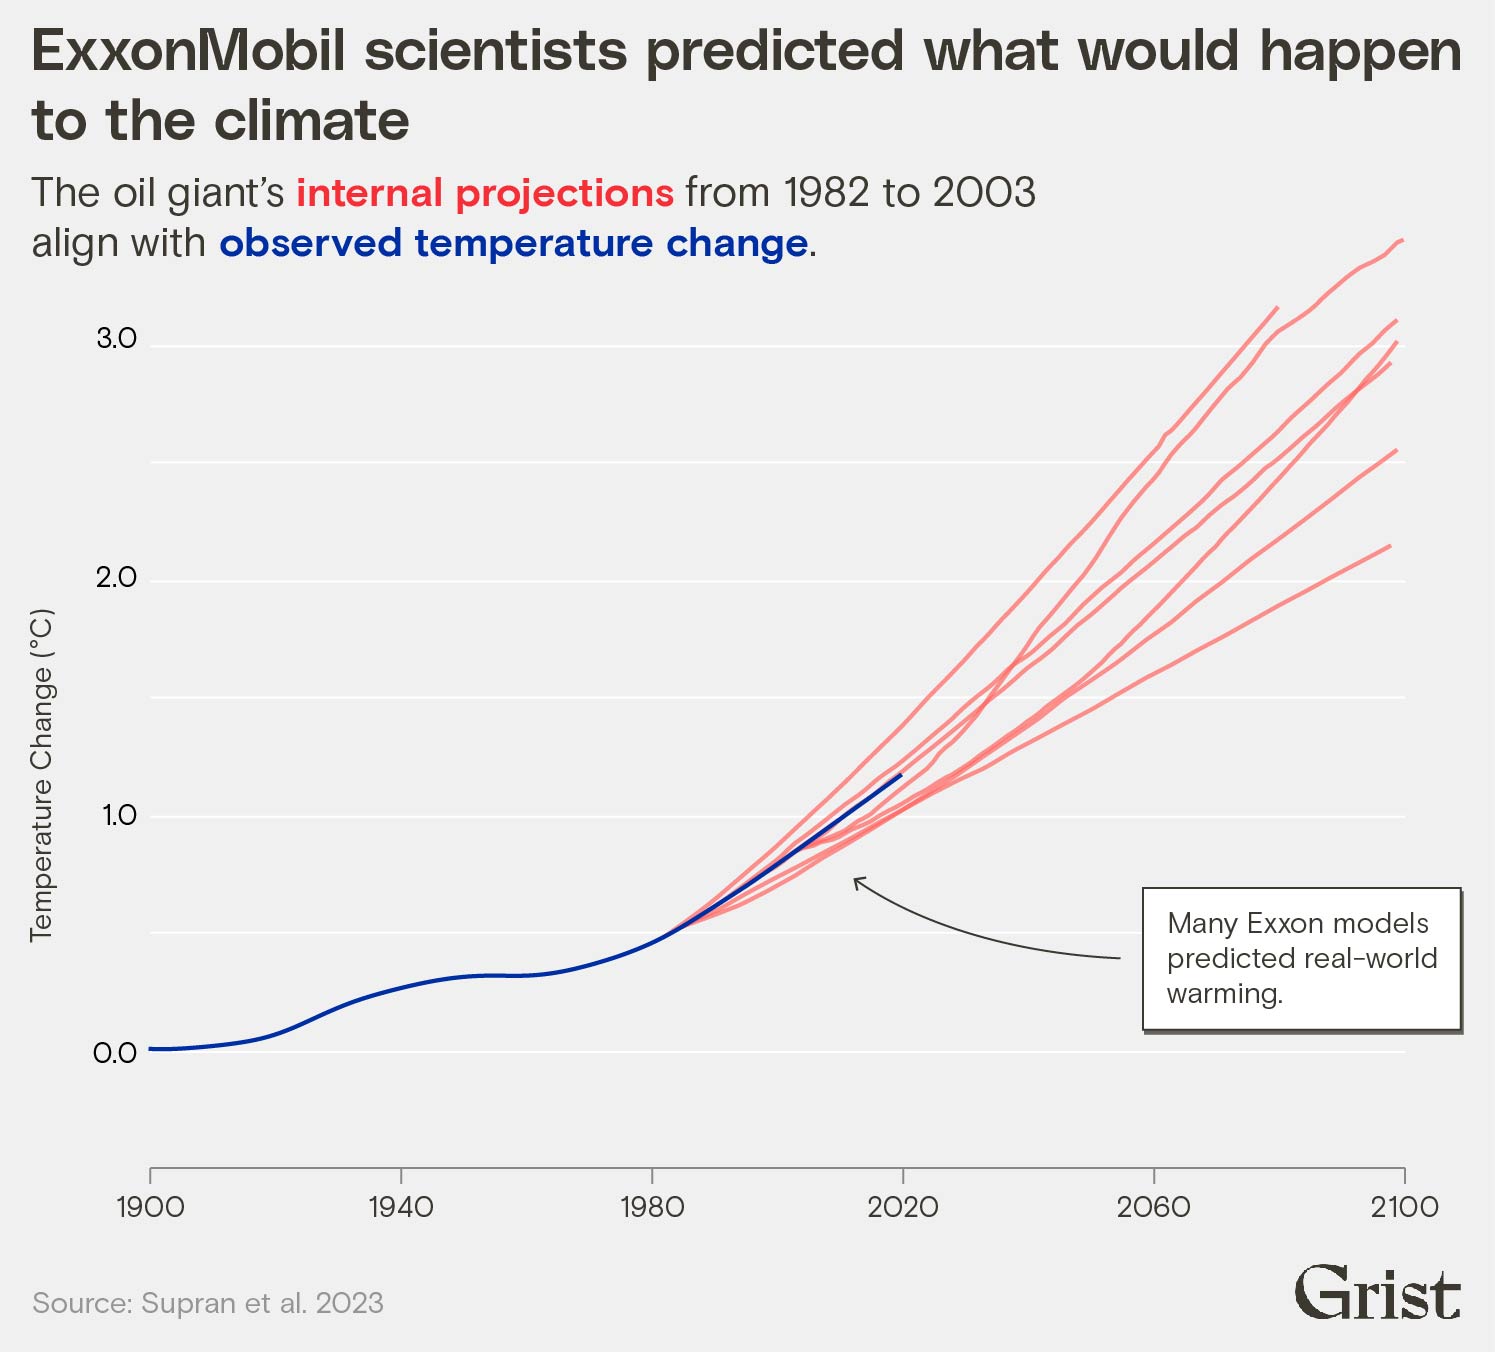 Le graphique multiligne montre l'alignement entre le changement de température observé et le changement de température futur modélisé par les scientifiques d'ExxonMobil.